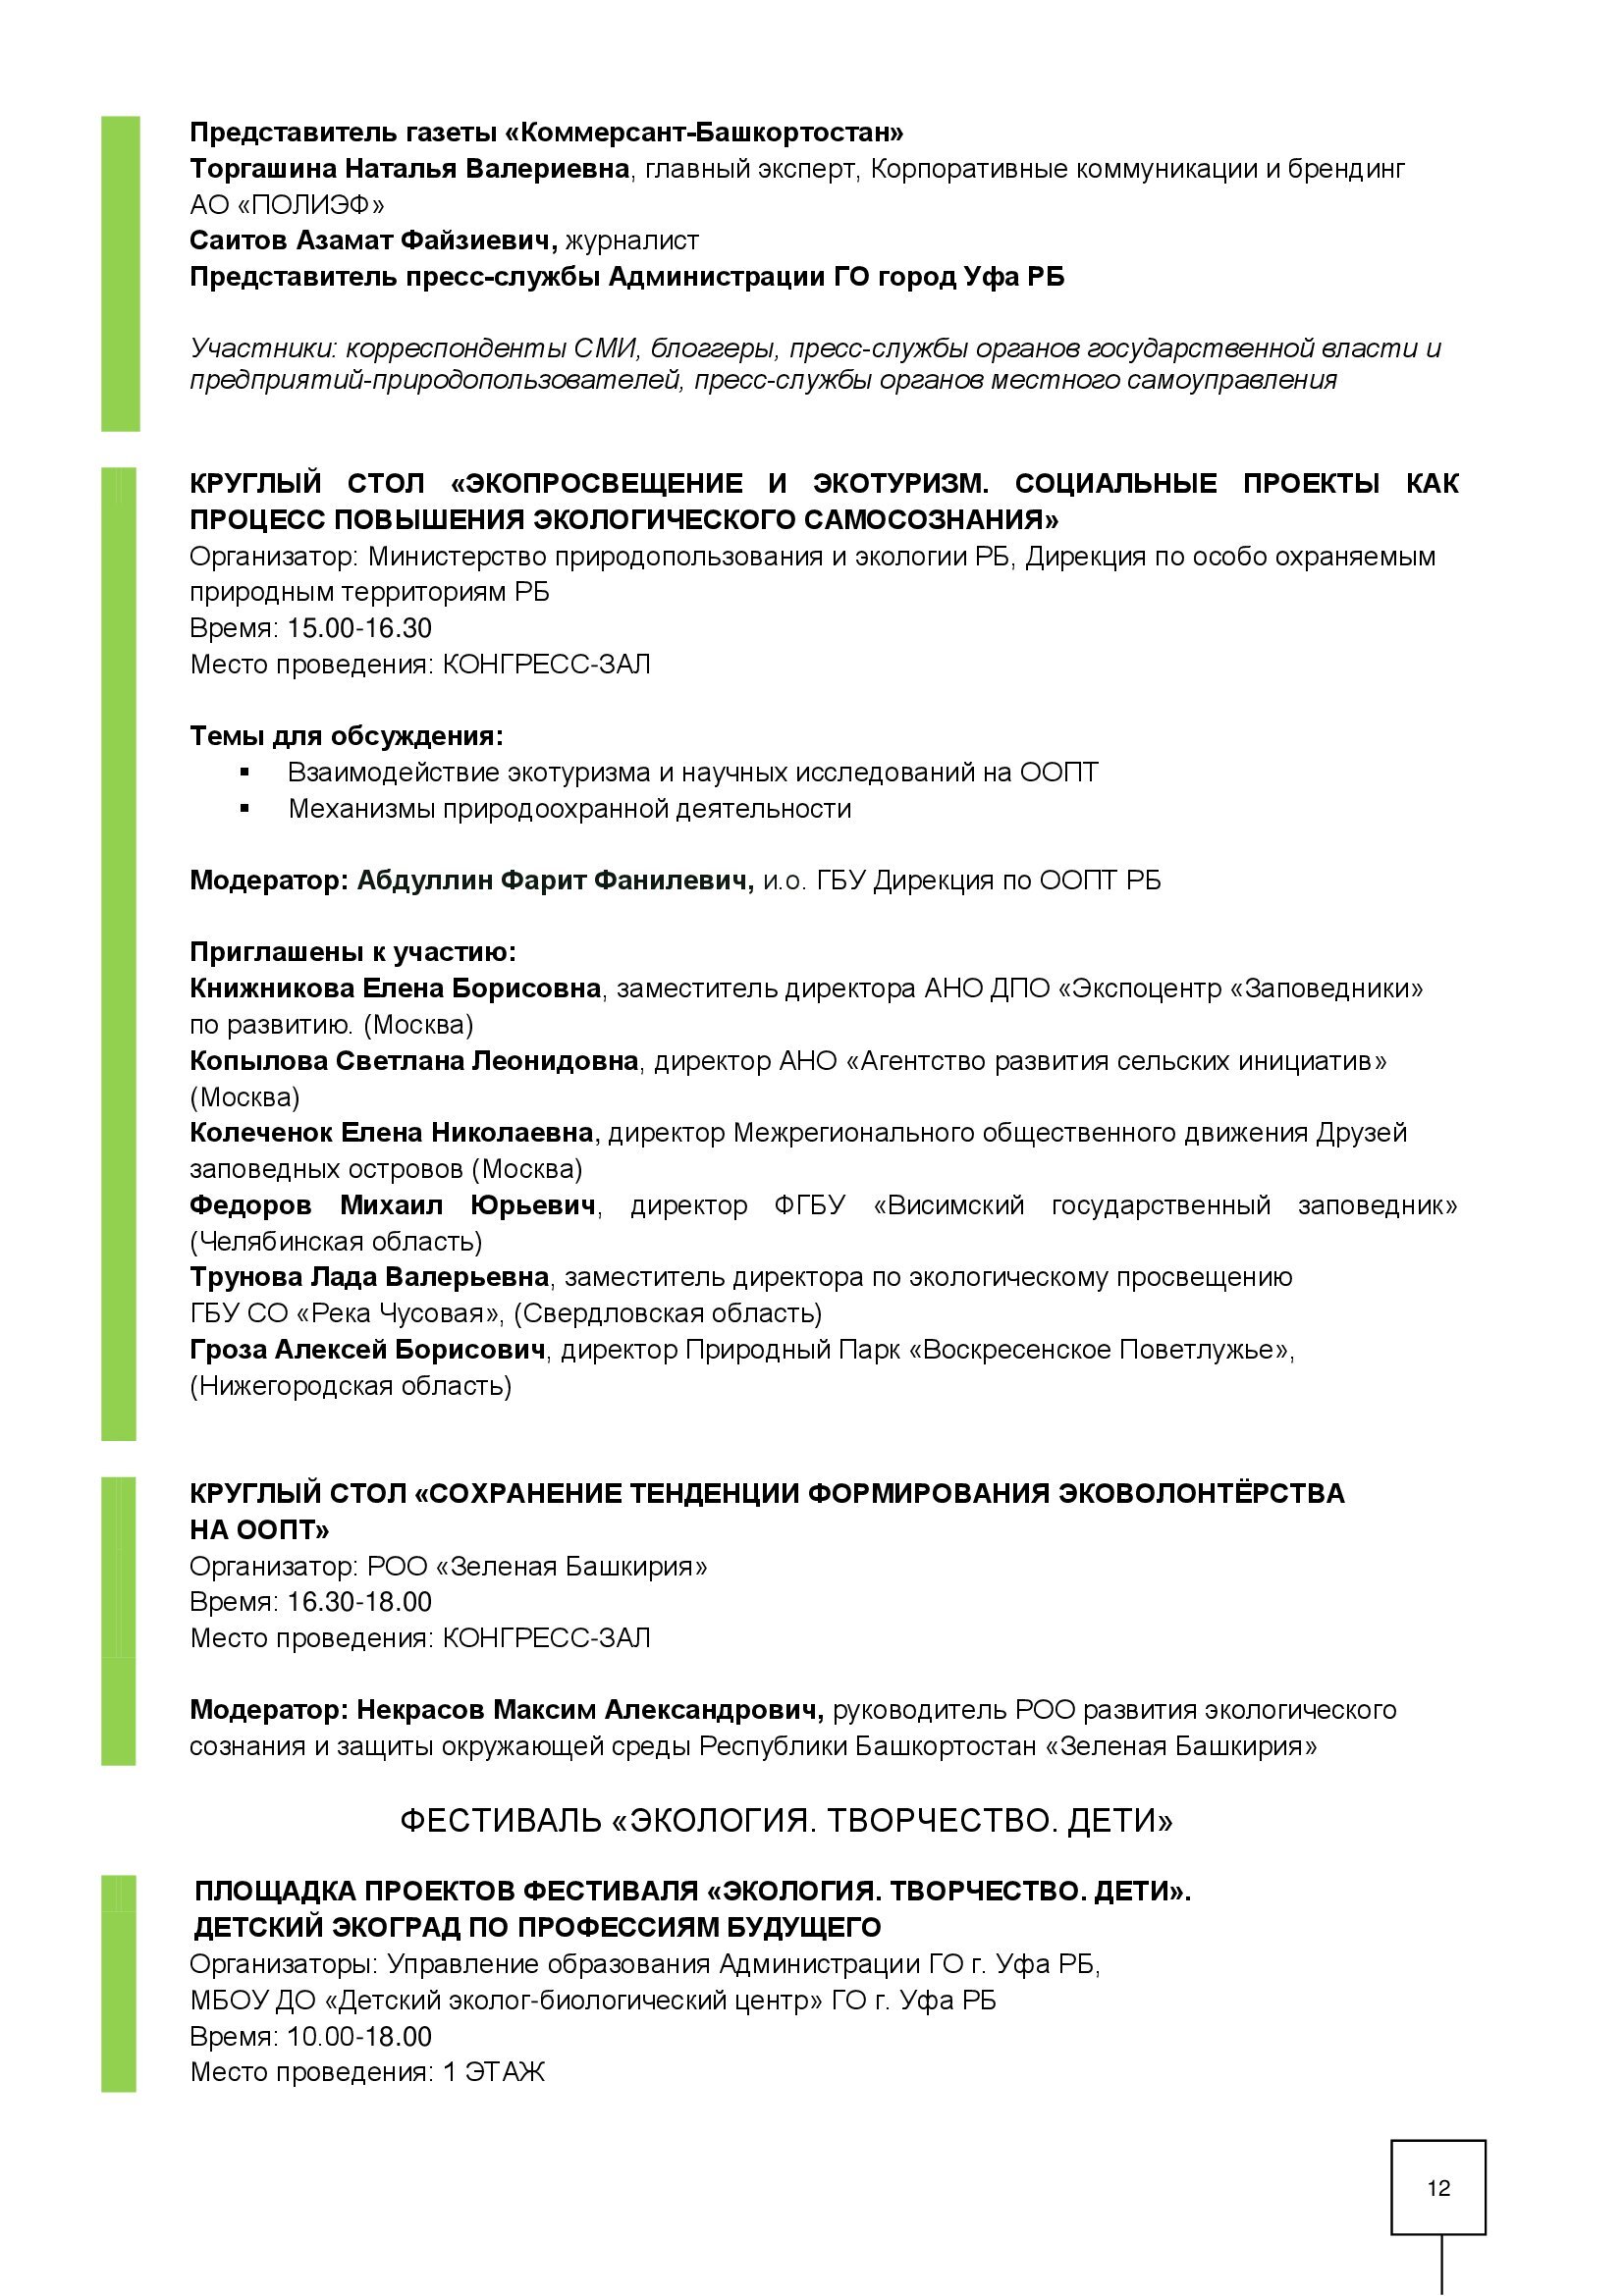 Александр Веселов: Утверждена программа экологического форума (Уфа ВДНХ-ЭКСПО 12 -14 апреля 2023 г.) - фото 12